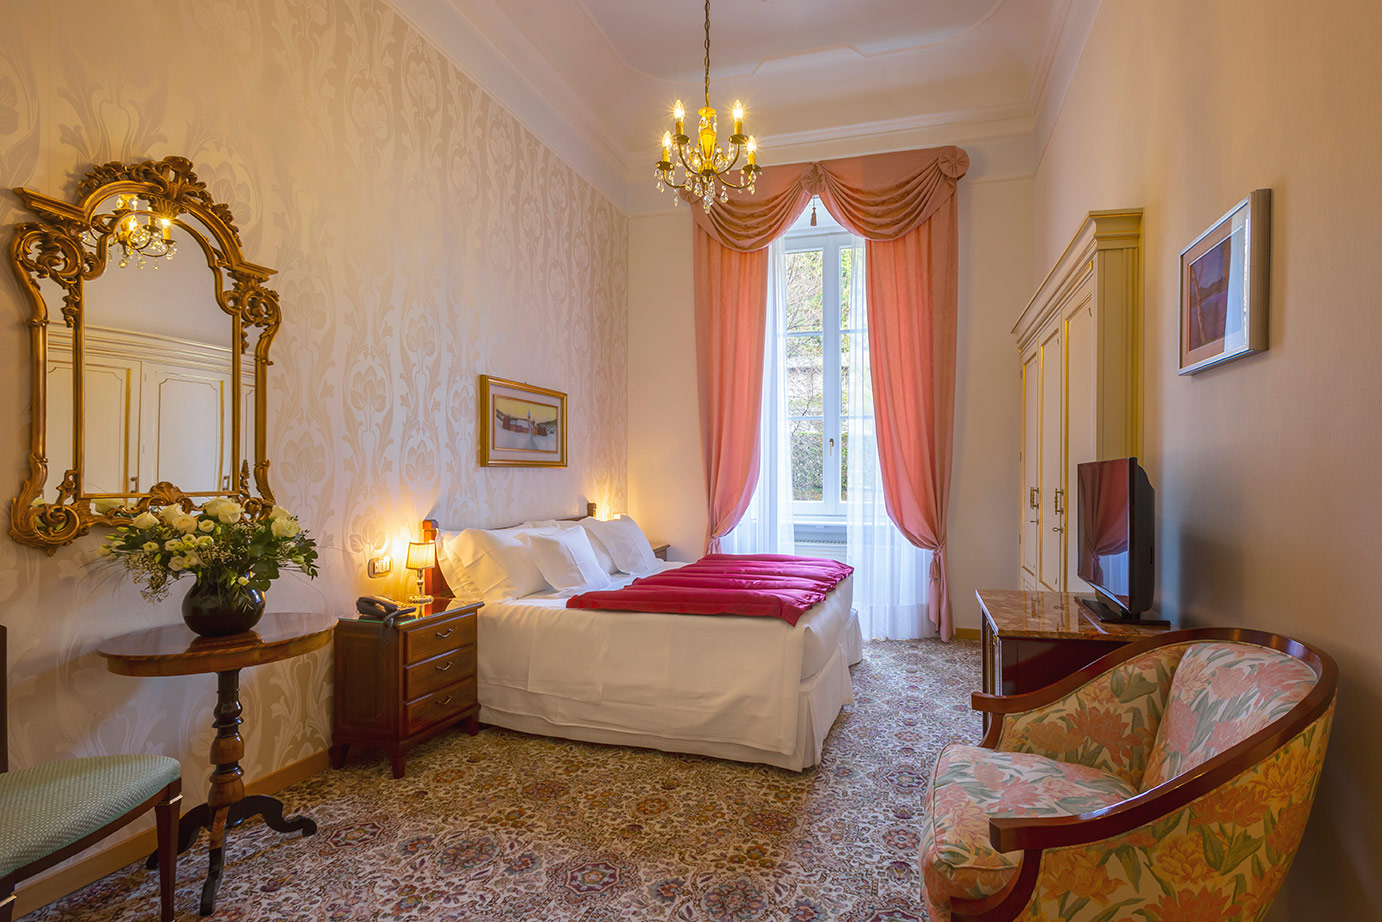  2  - Grand Hotel Villa Serbelloni